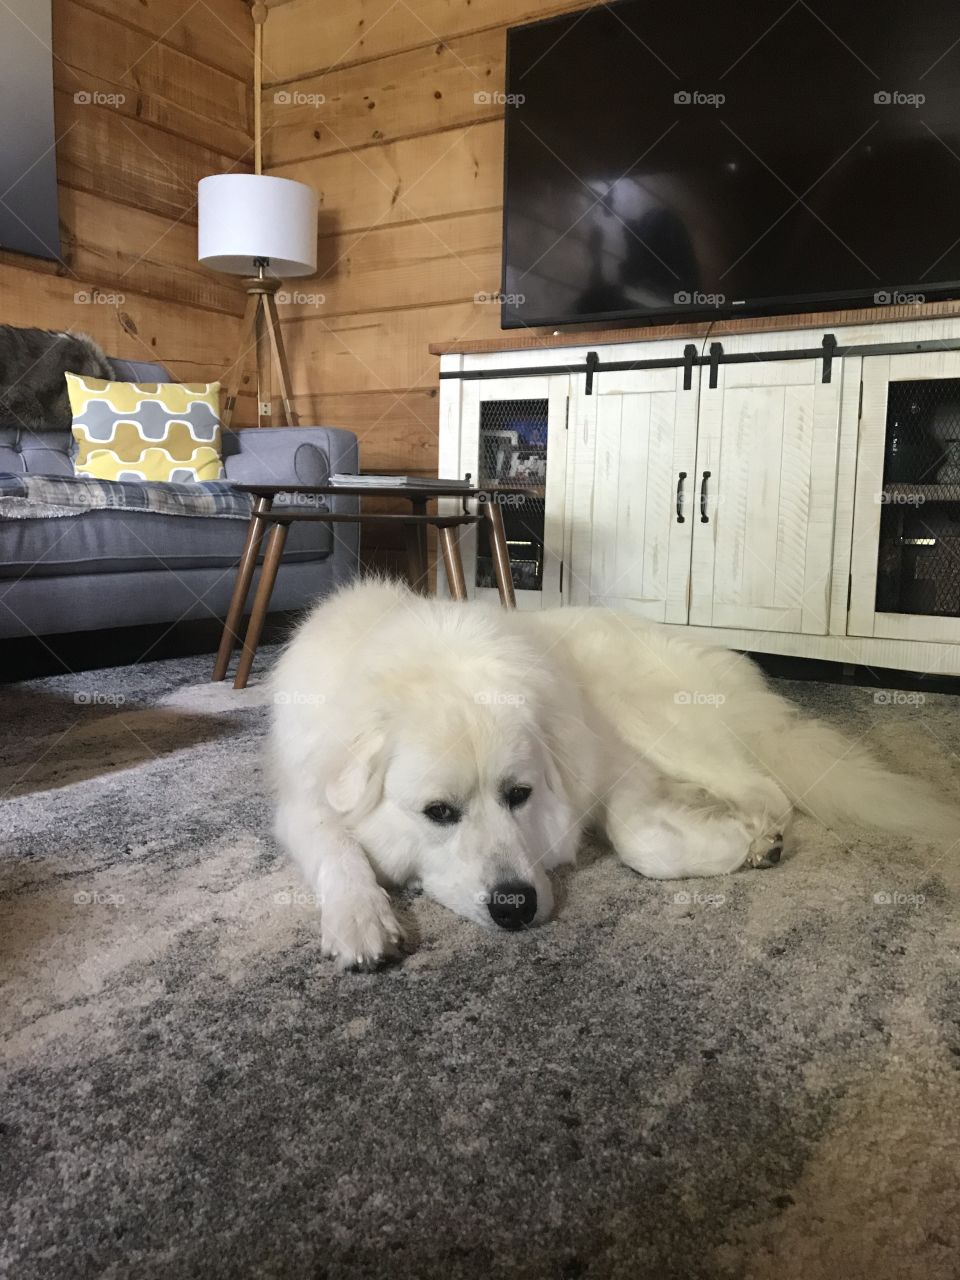 Fluffy polar bear sleeping on the rug